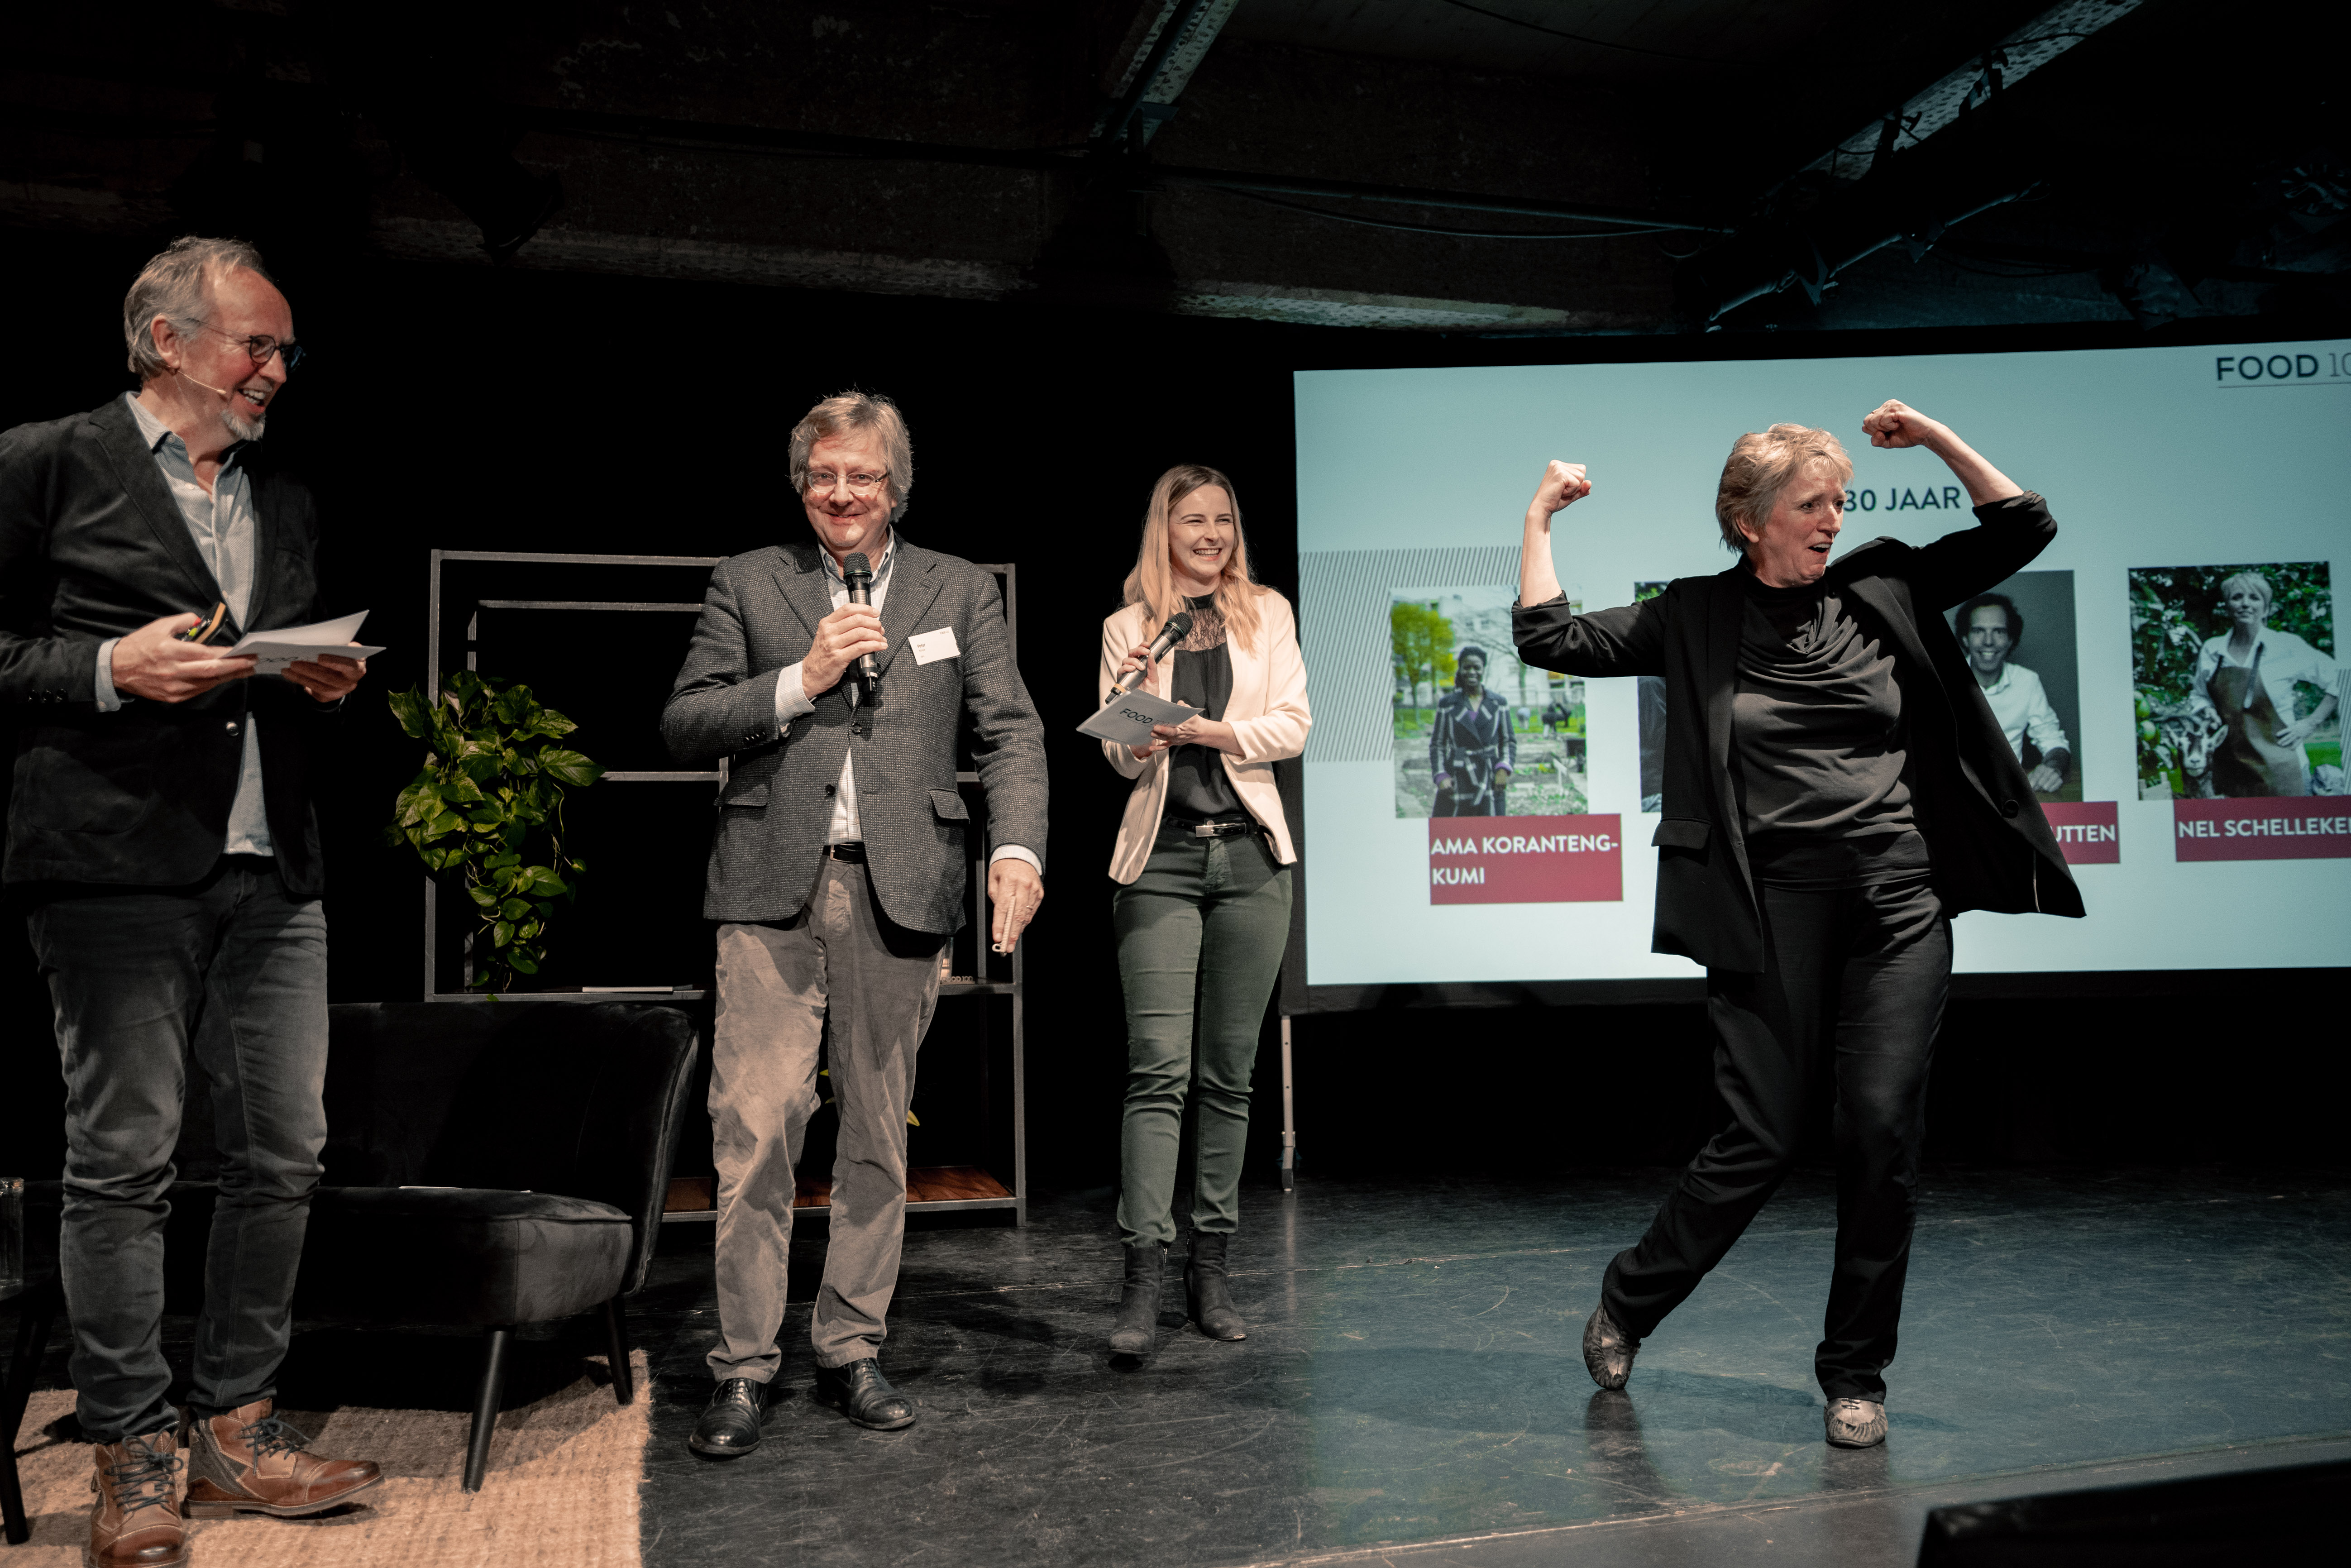 Links: Hans Steenbergen op het podium bij de uitreiking van de Food100